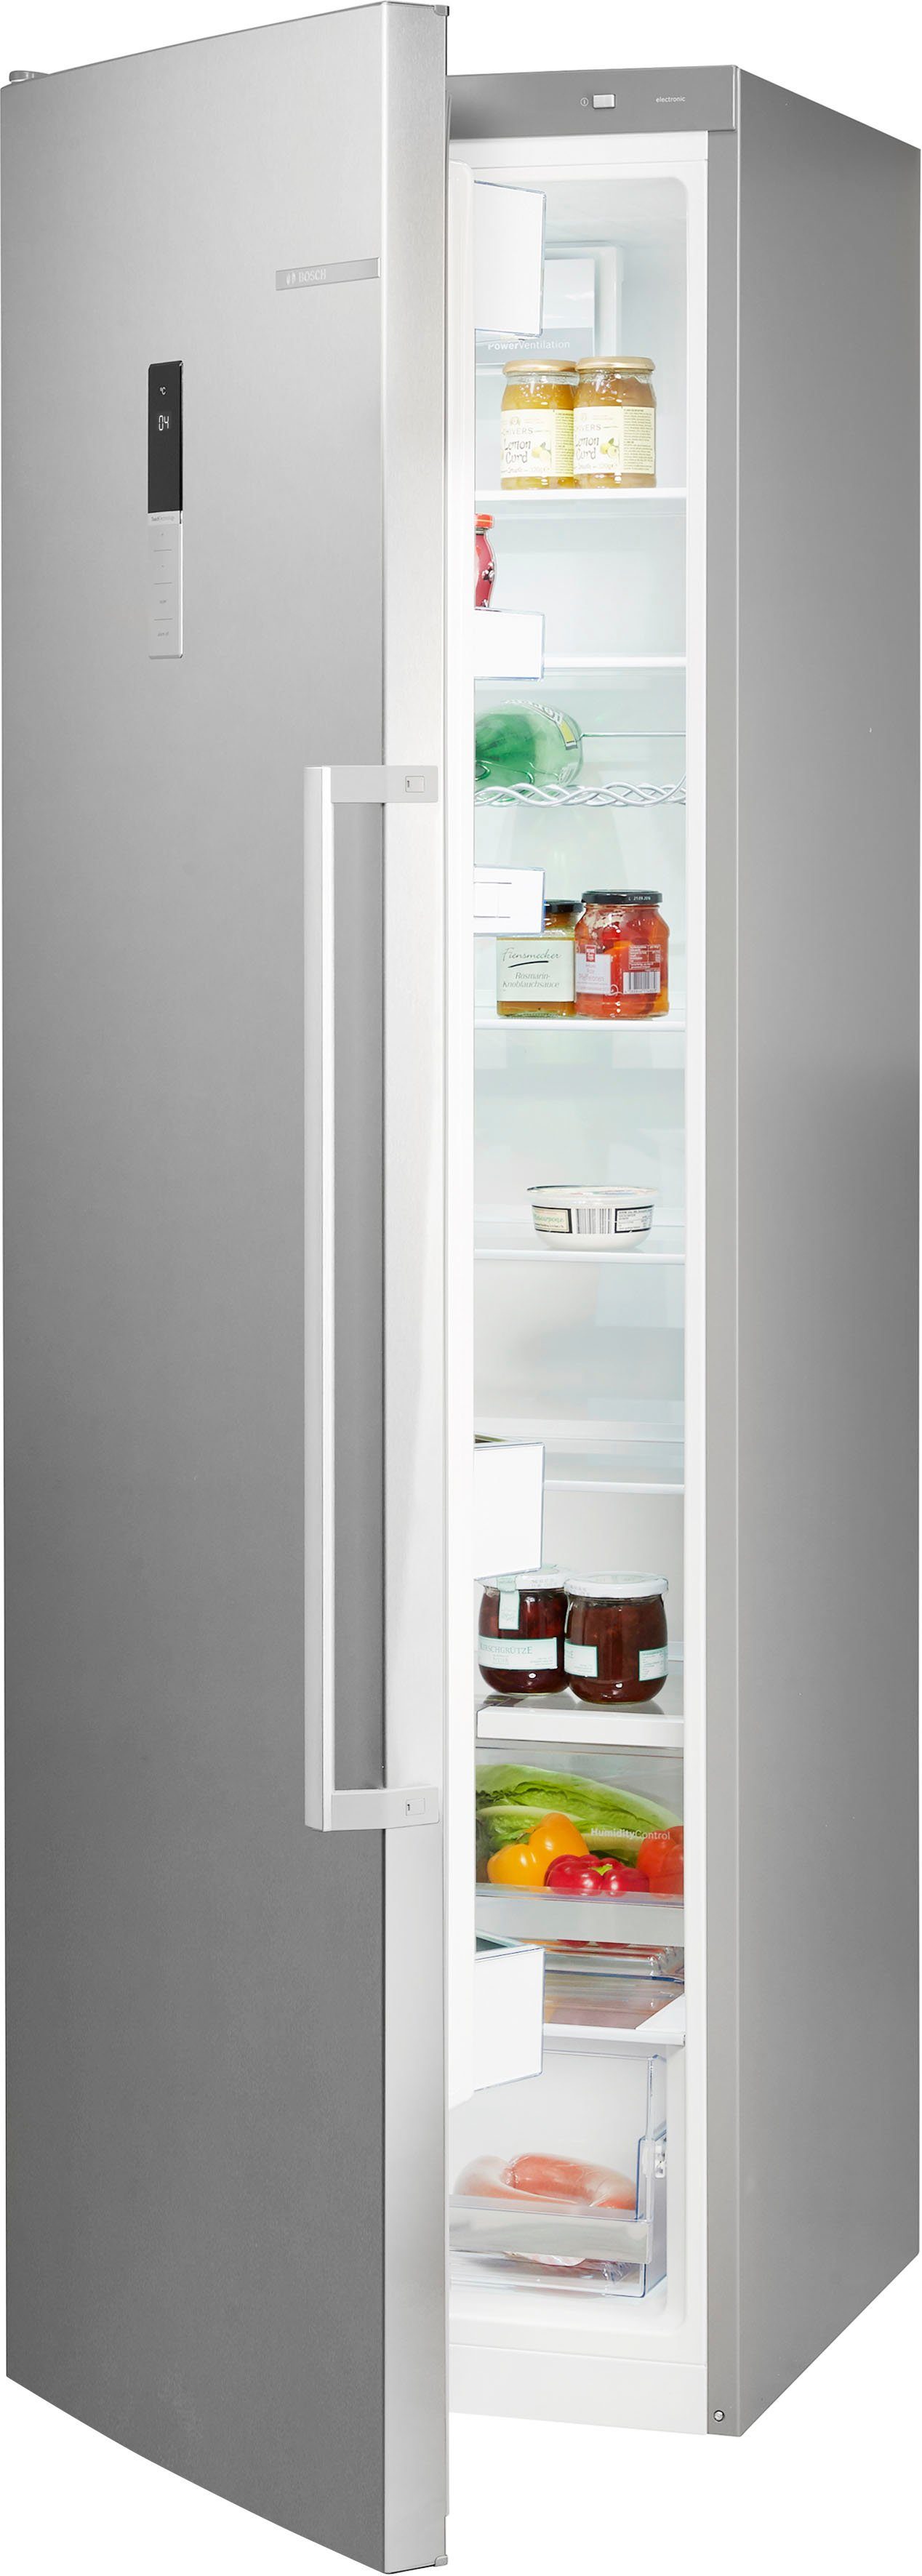 BOSCH Kühlschrank KSV36BIEP, 186 cm hoch, 60 cm breit